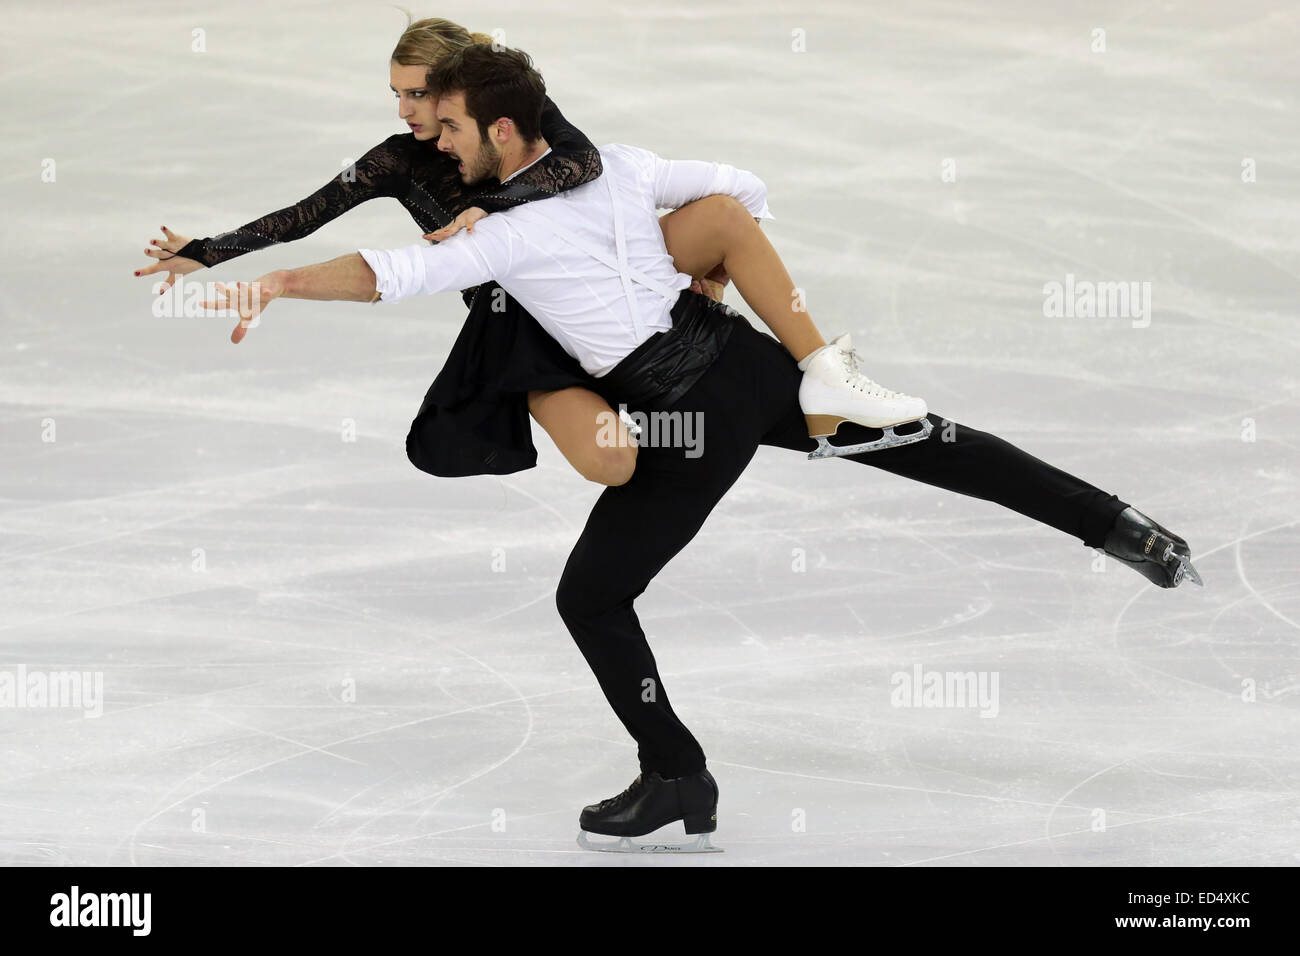 Barcelone, Espagne. Dec 12, 2014. ISU Grand Prix of Figure Skating Final 2014. Picture Show Gabriella Papadakis et Guillaume Cizeron (FRA) au cours de danse sur glace, programme de danse court. © Plus Sport Action/Alamy Live News Banque D'Images